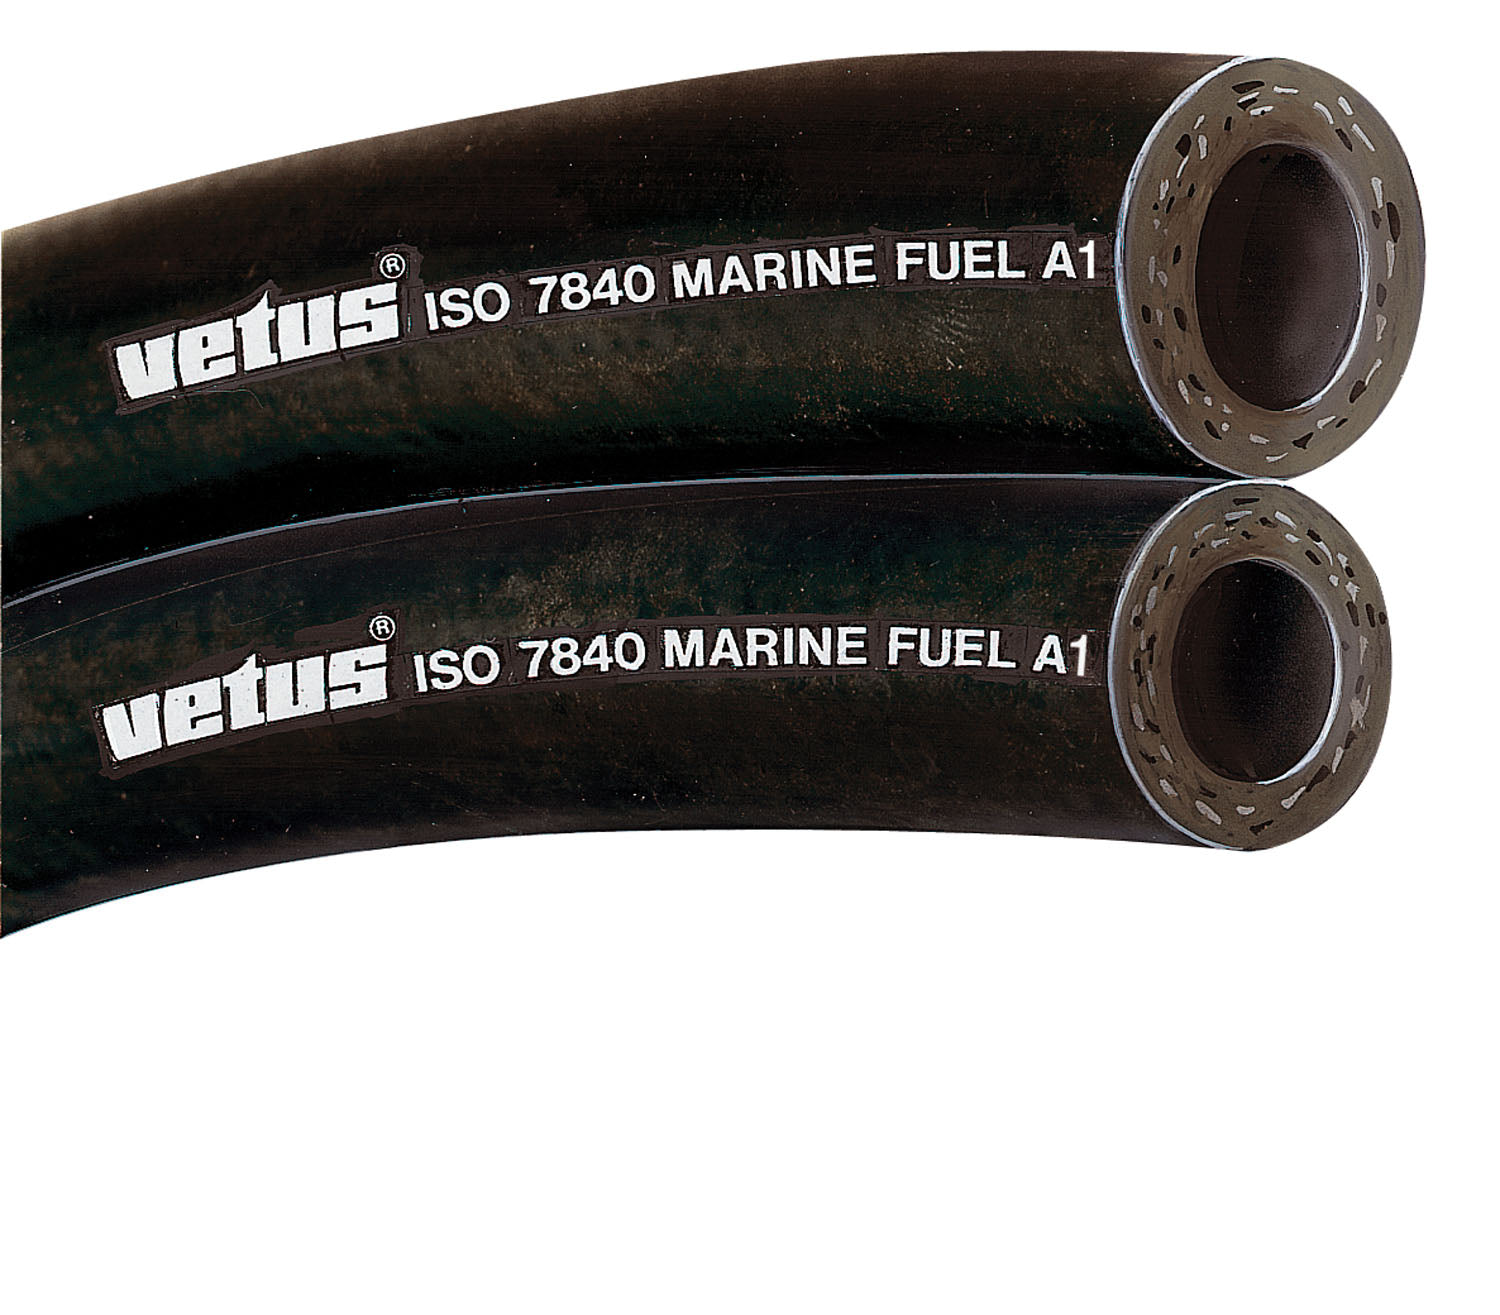 Vetus FUHOSE19A - Fuel hose 19x28mm iso 7840marine fuel A1